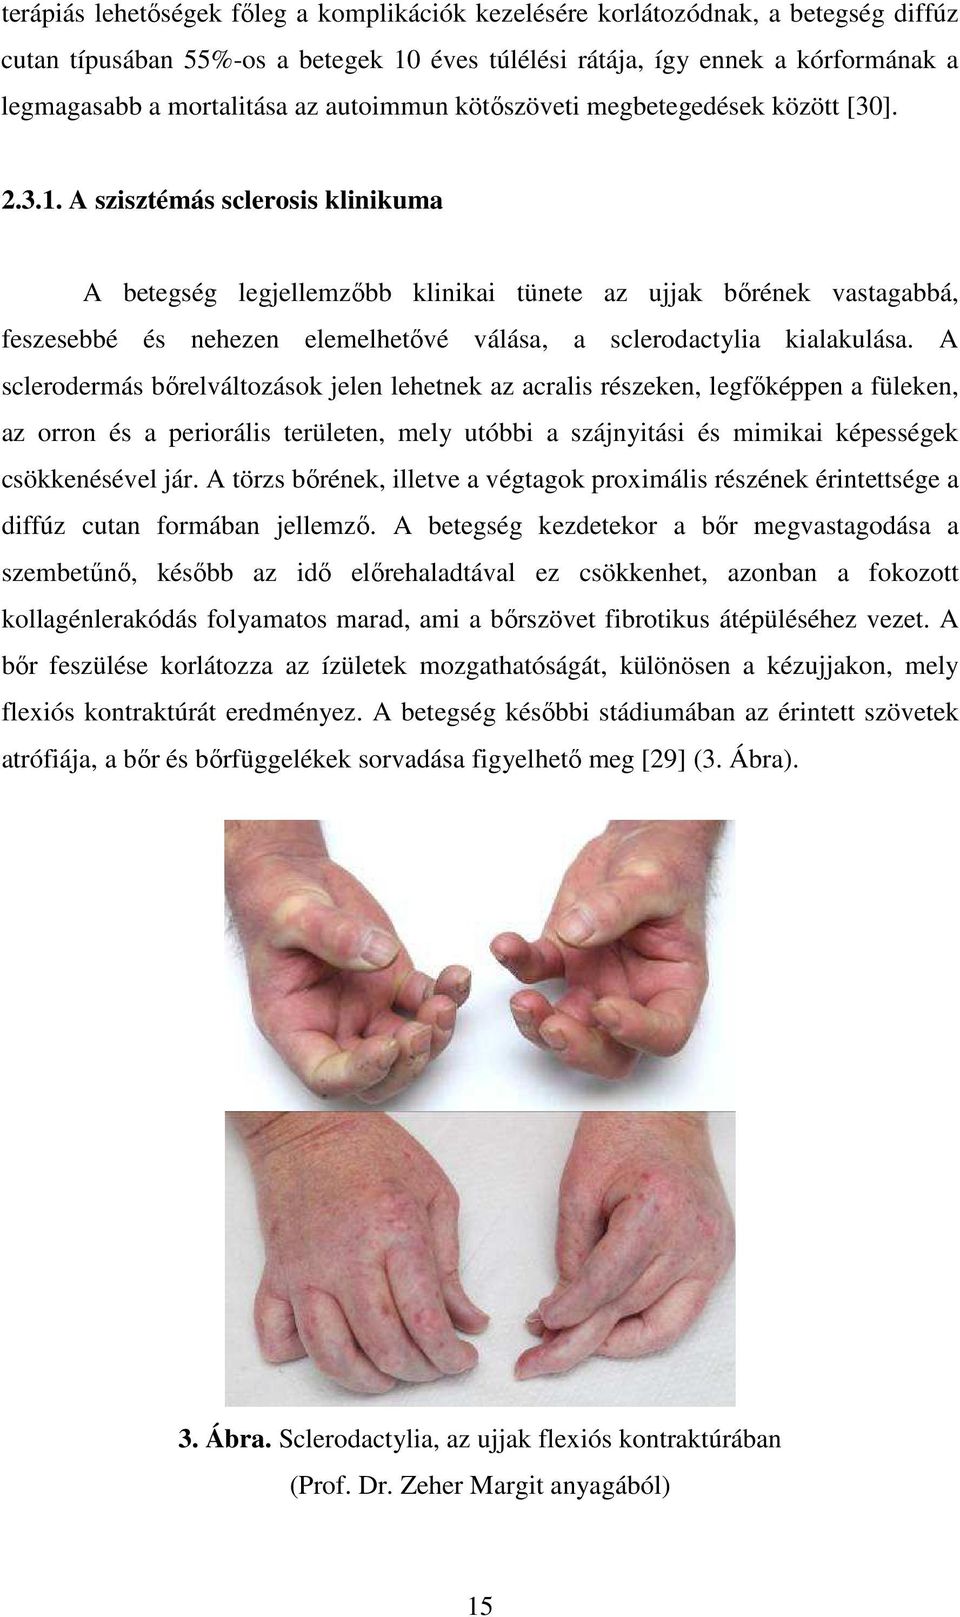 A szisztémás sclerosis klinikuma A betegség legjellemzőbb klinikai tünete az ujjak bőrének vastagabbá, feszesebbé és nehezen elemelhetővé válása, a sclerodactylia kialakulása.